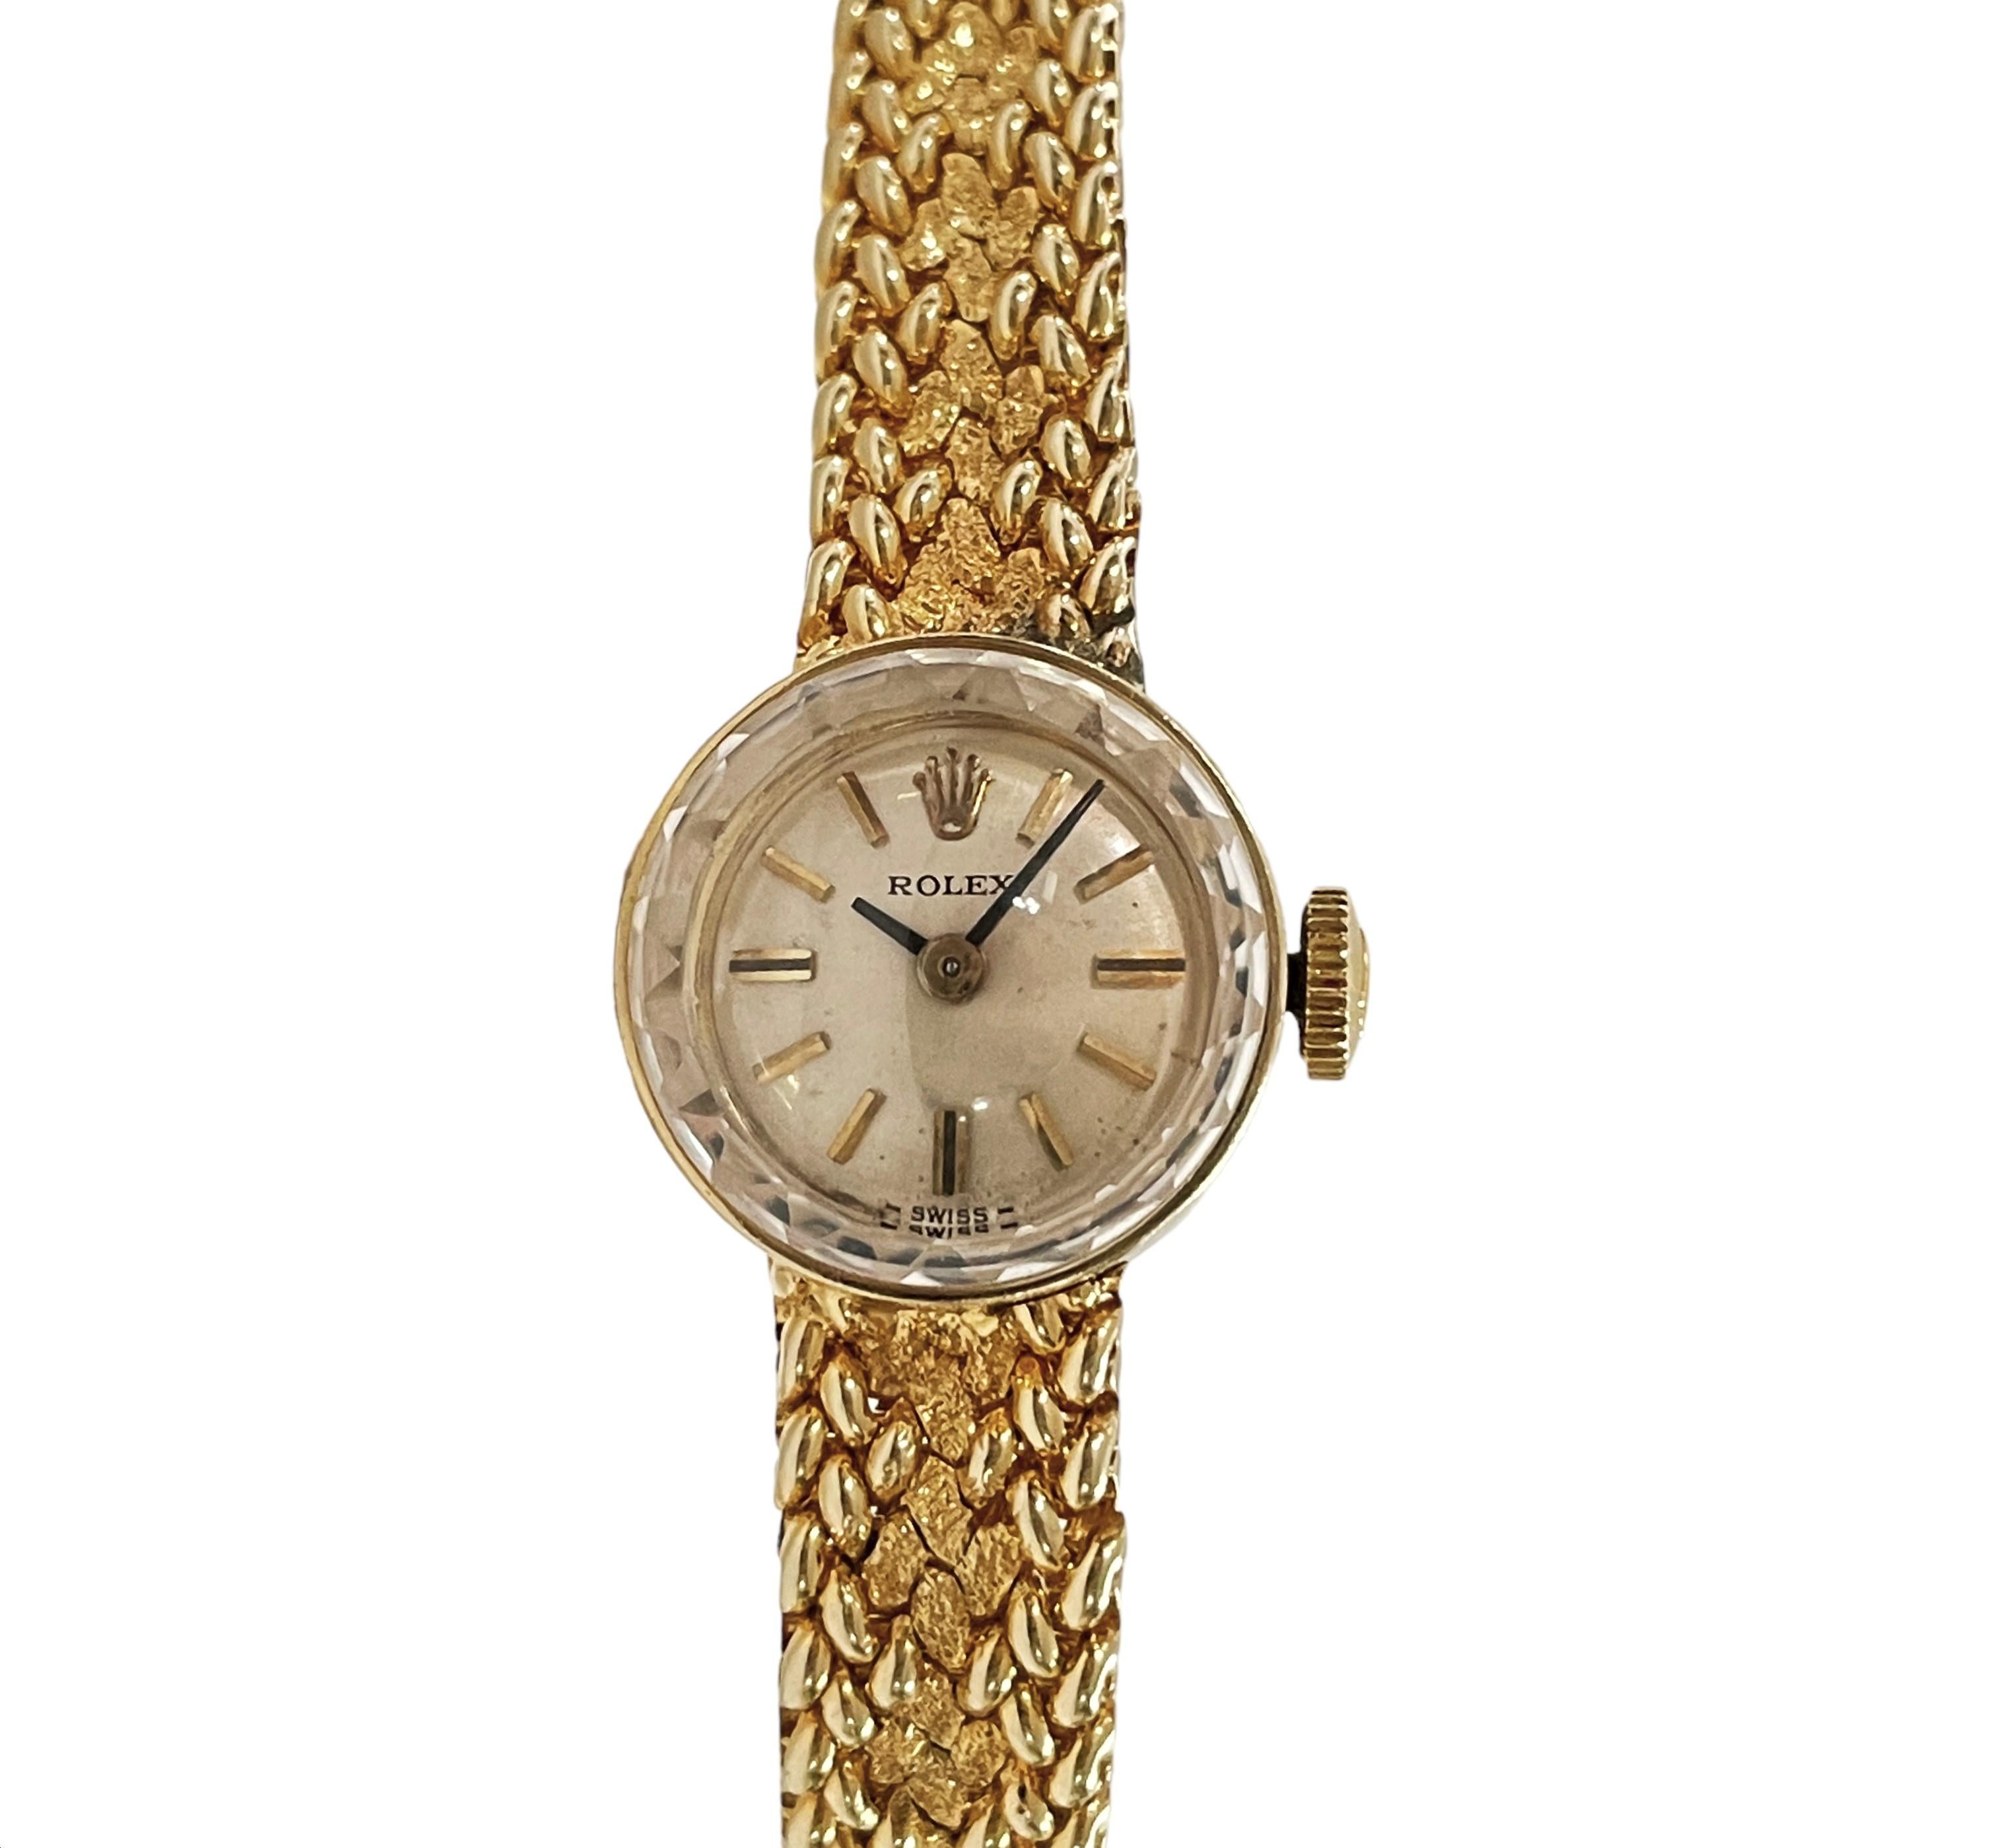 Vintage 1960s Ladies Rolex 14k Yellow Gold Watch, Switzerland 4